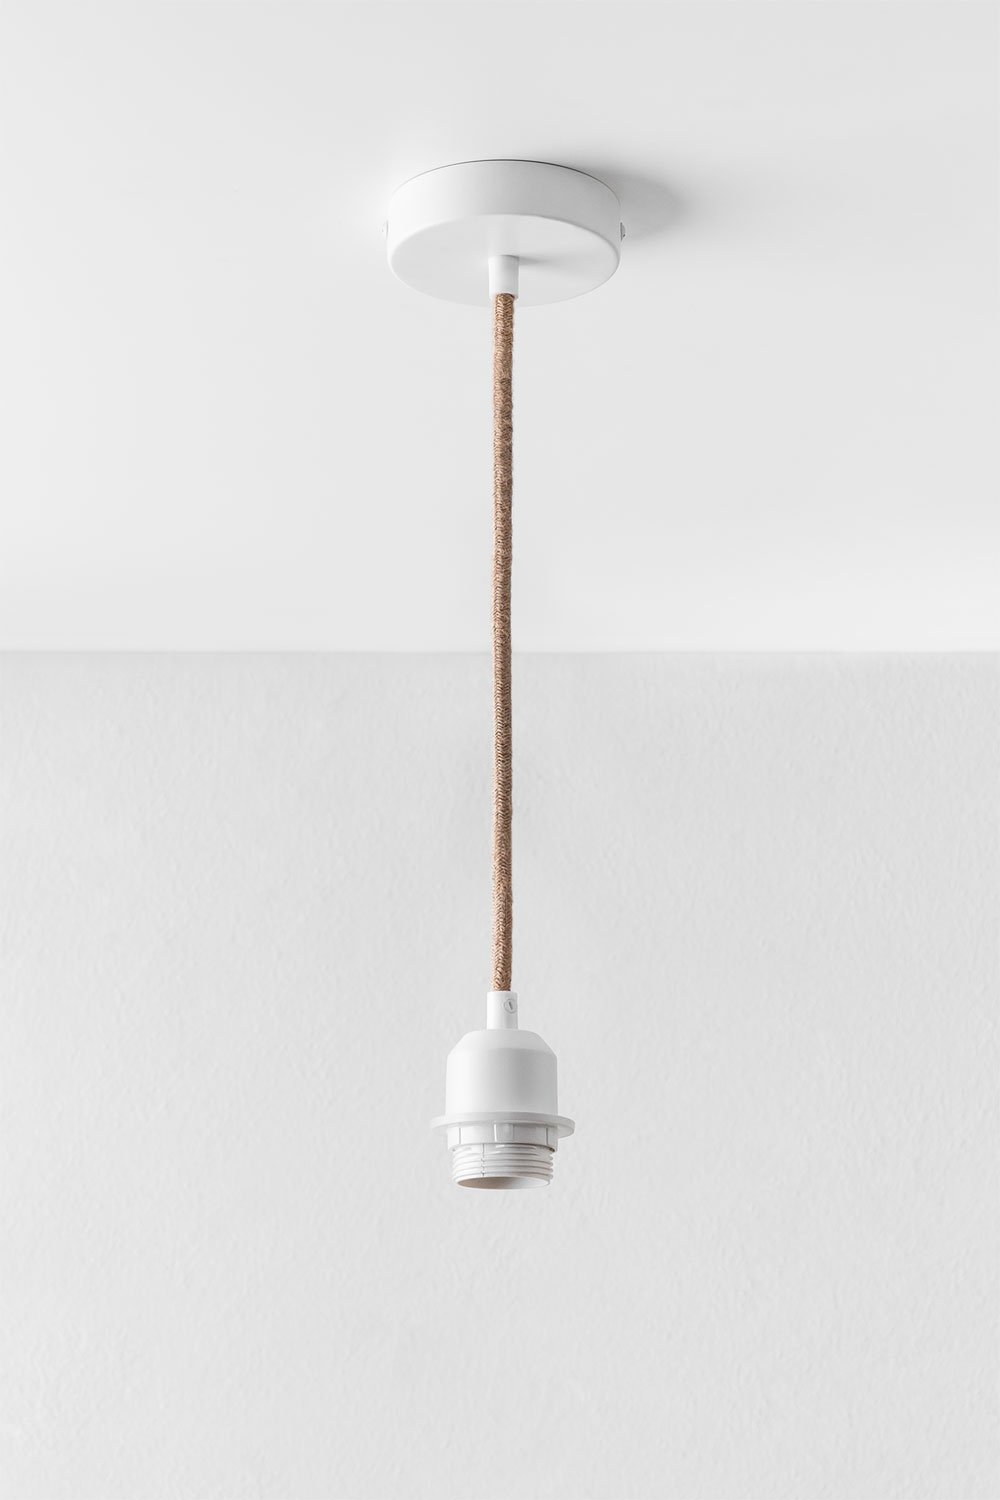 Snoer voor Plafondlamp Coyle , galerij beeld 1